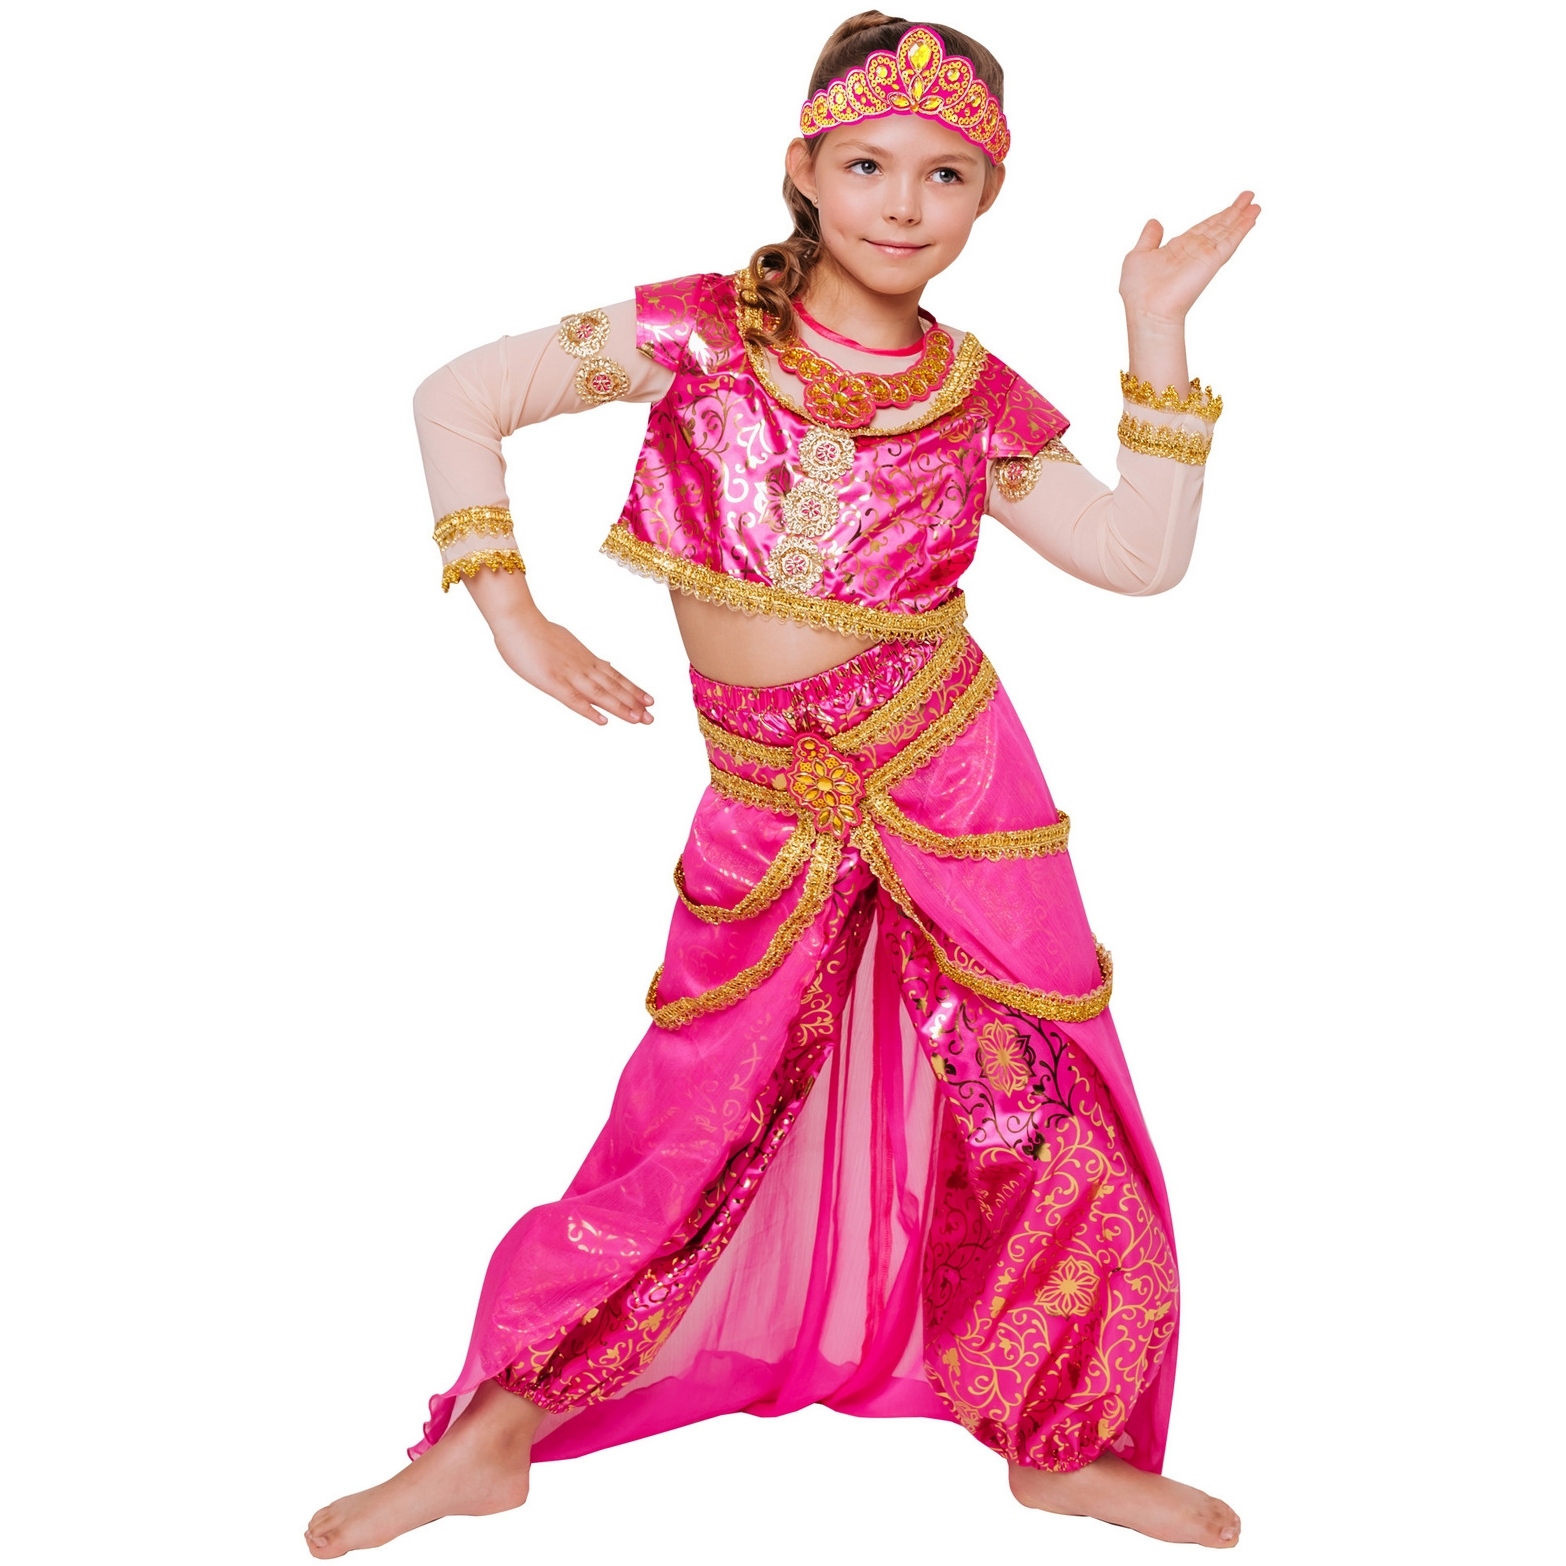 Карнавальный костюм "Принцесса востока" (топ, шаровары, юбка, диадема) размер 122-64